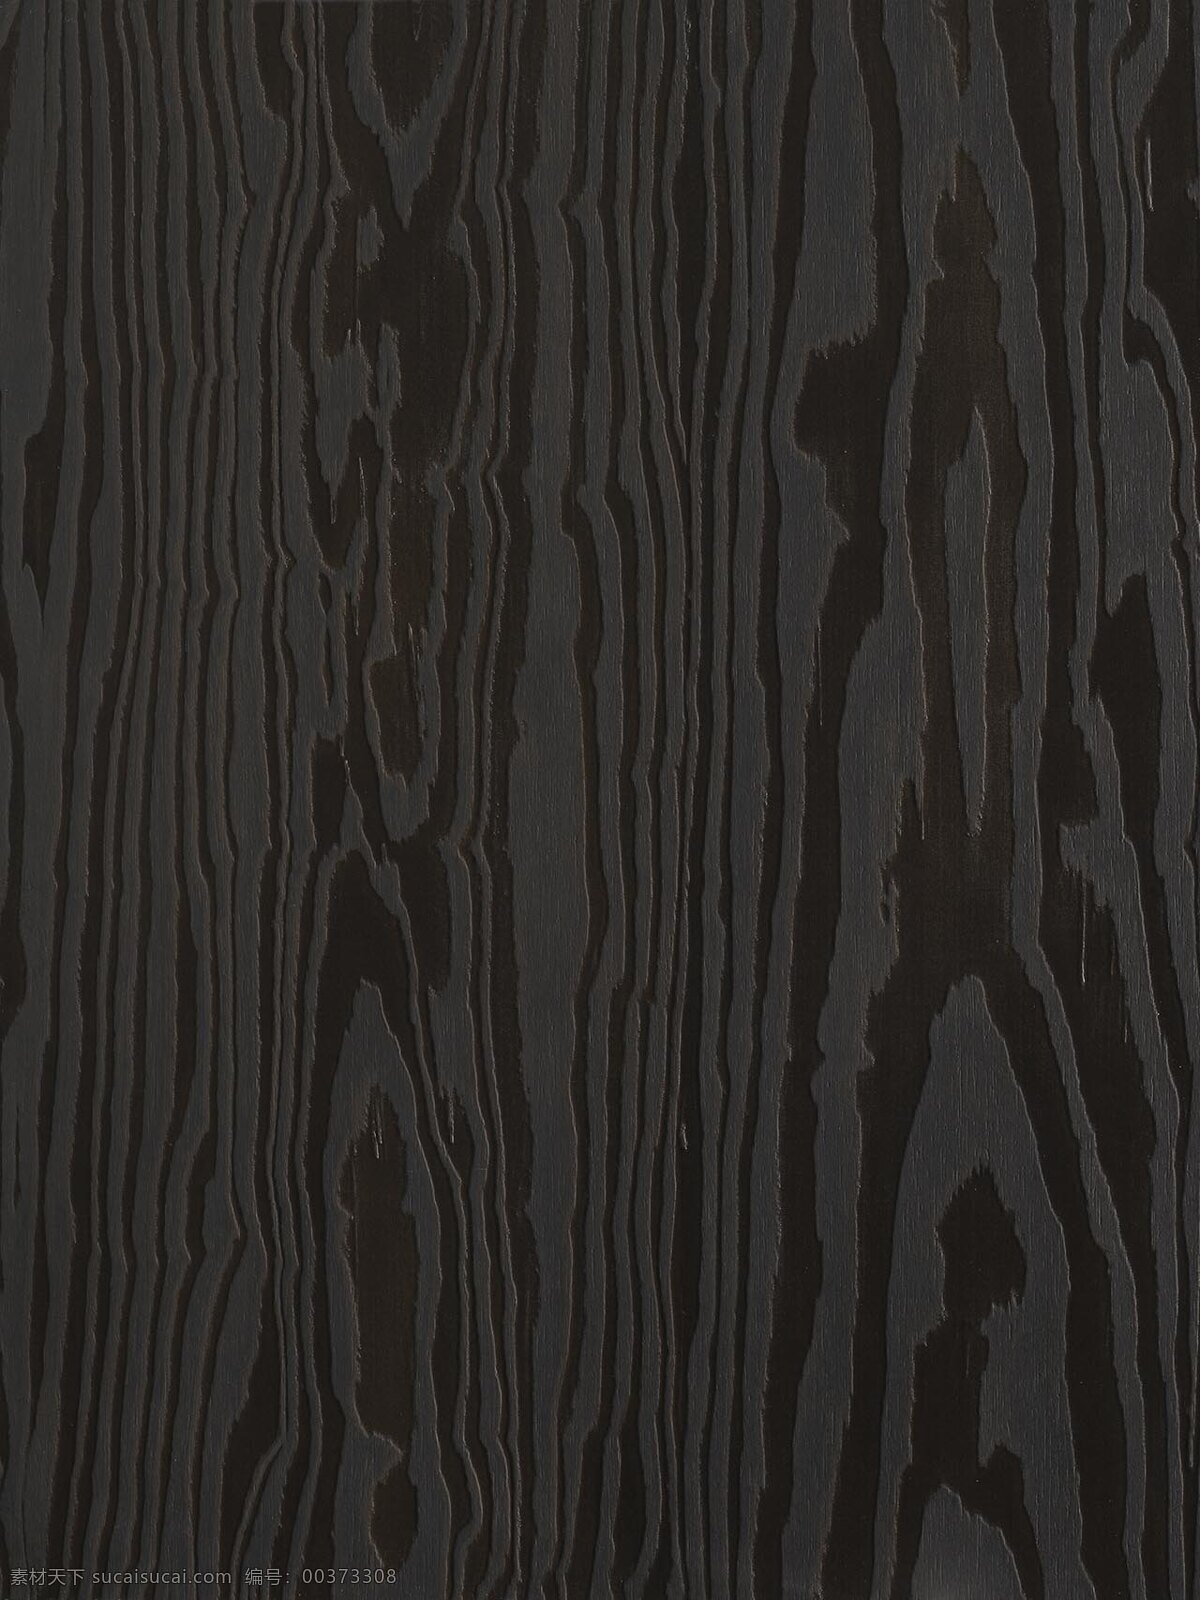 木纹材质 仿古木纹 木纹图片 木纹纸 木纹贴图 木地板贴图 环境设计 建筑设计